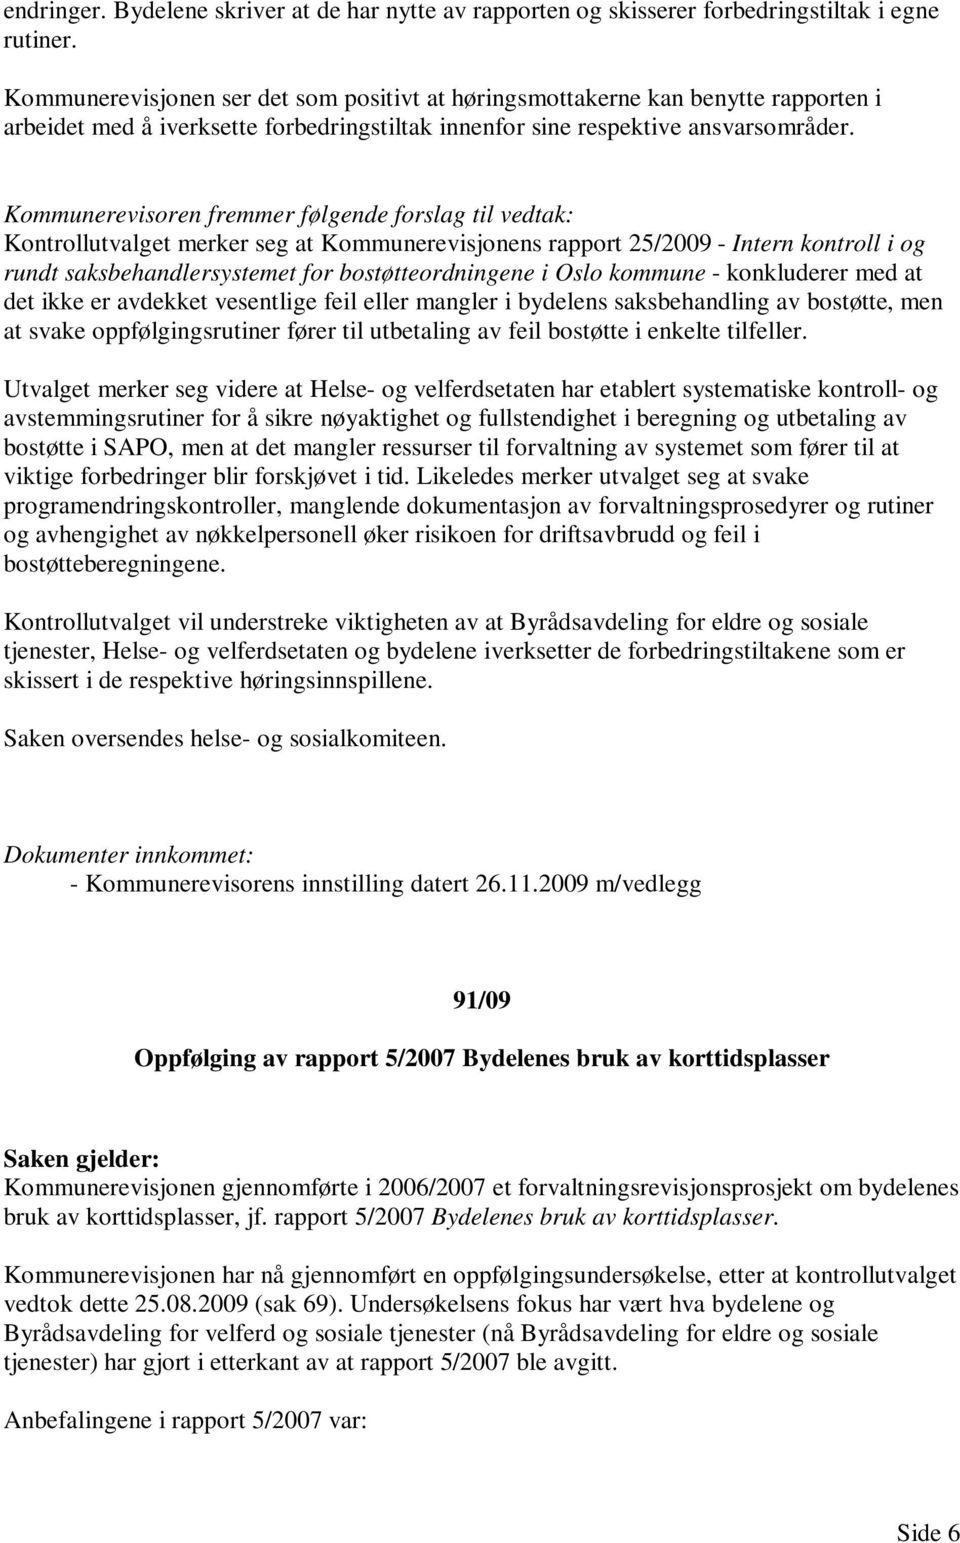 Kontrollutvalget merker seg at Kommunerevisjonens rapport 25/2009 - Intern kontroll i og rundt saksbehandlersystemet for bostøtteordningene i Oslo kommune - konkluderer med at det ikke er avdekket